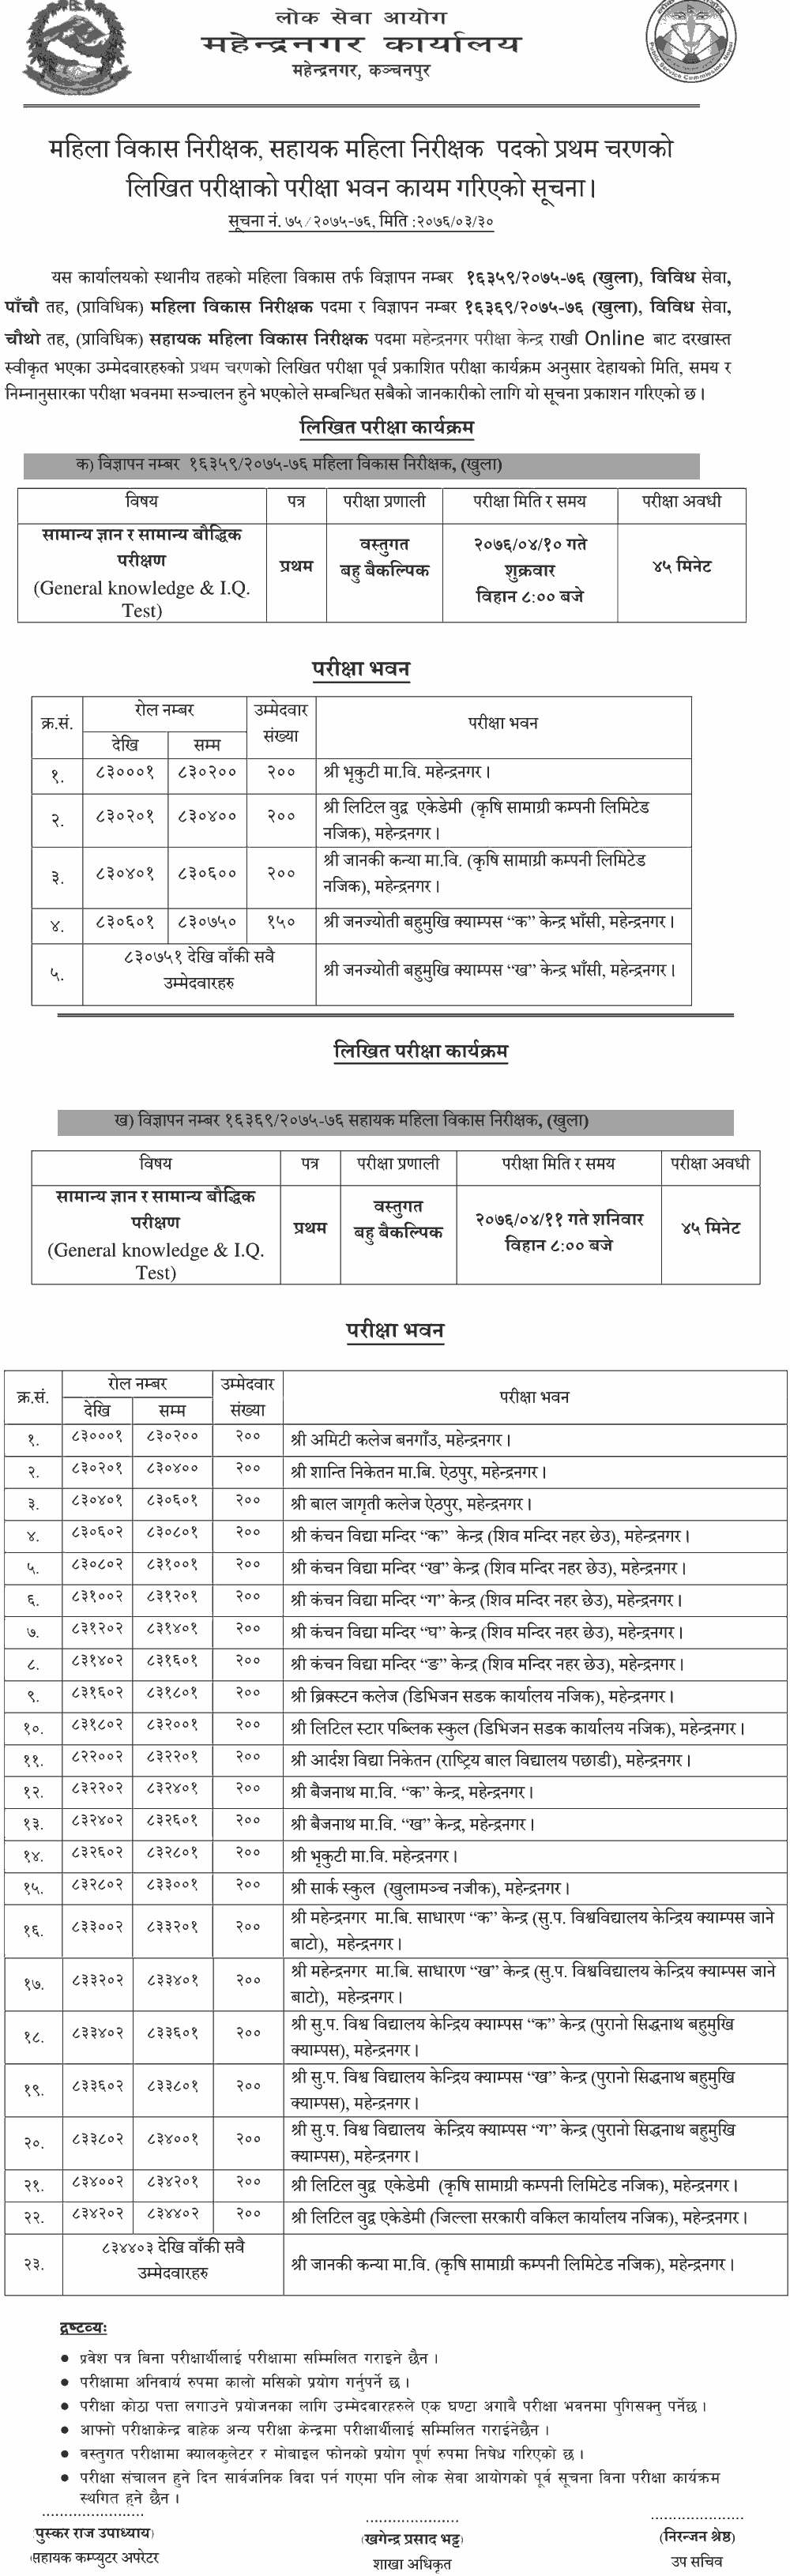 Local Level Mahila Bikas Written Exam Center - Mahendranagar